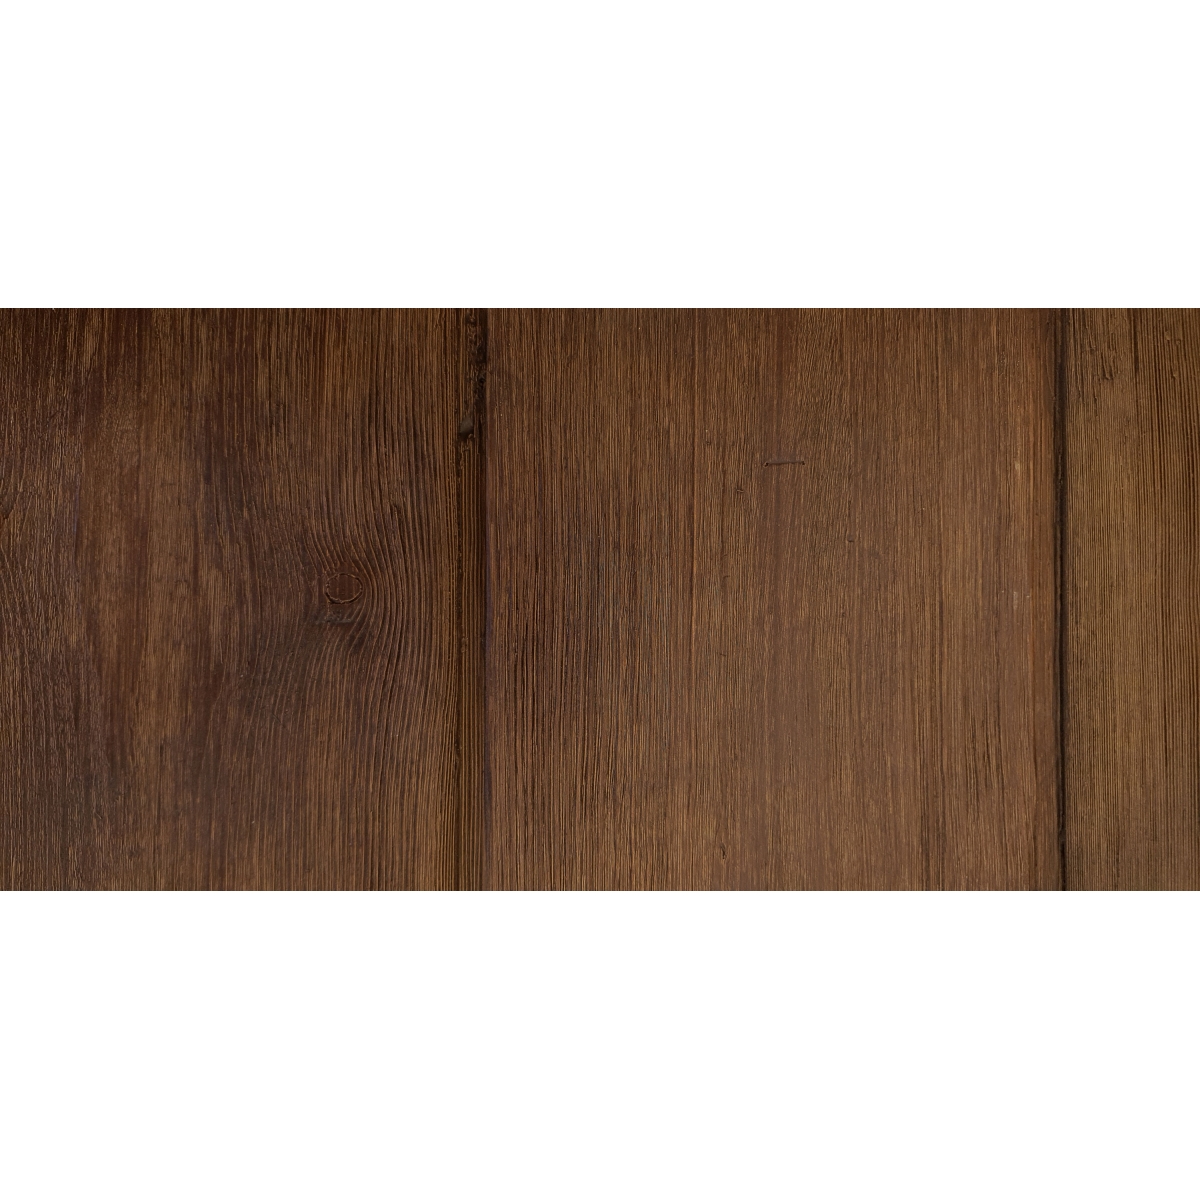 Foto de Panel rústico de tres lamas imitación madera de 300x62cm